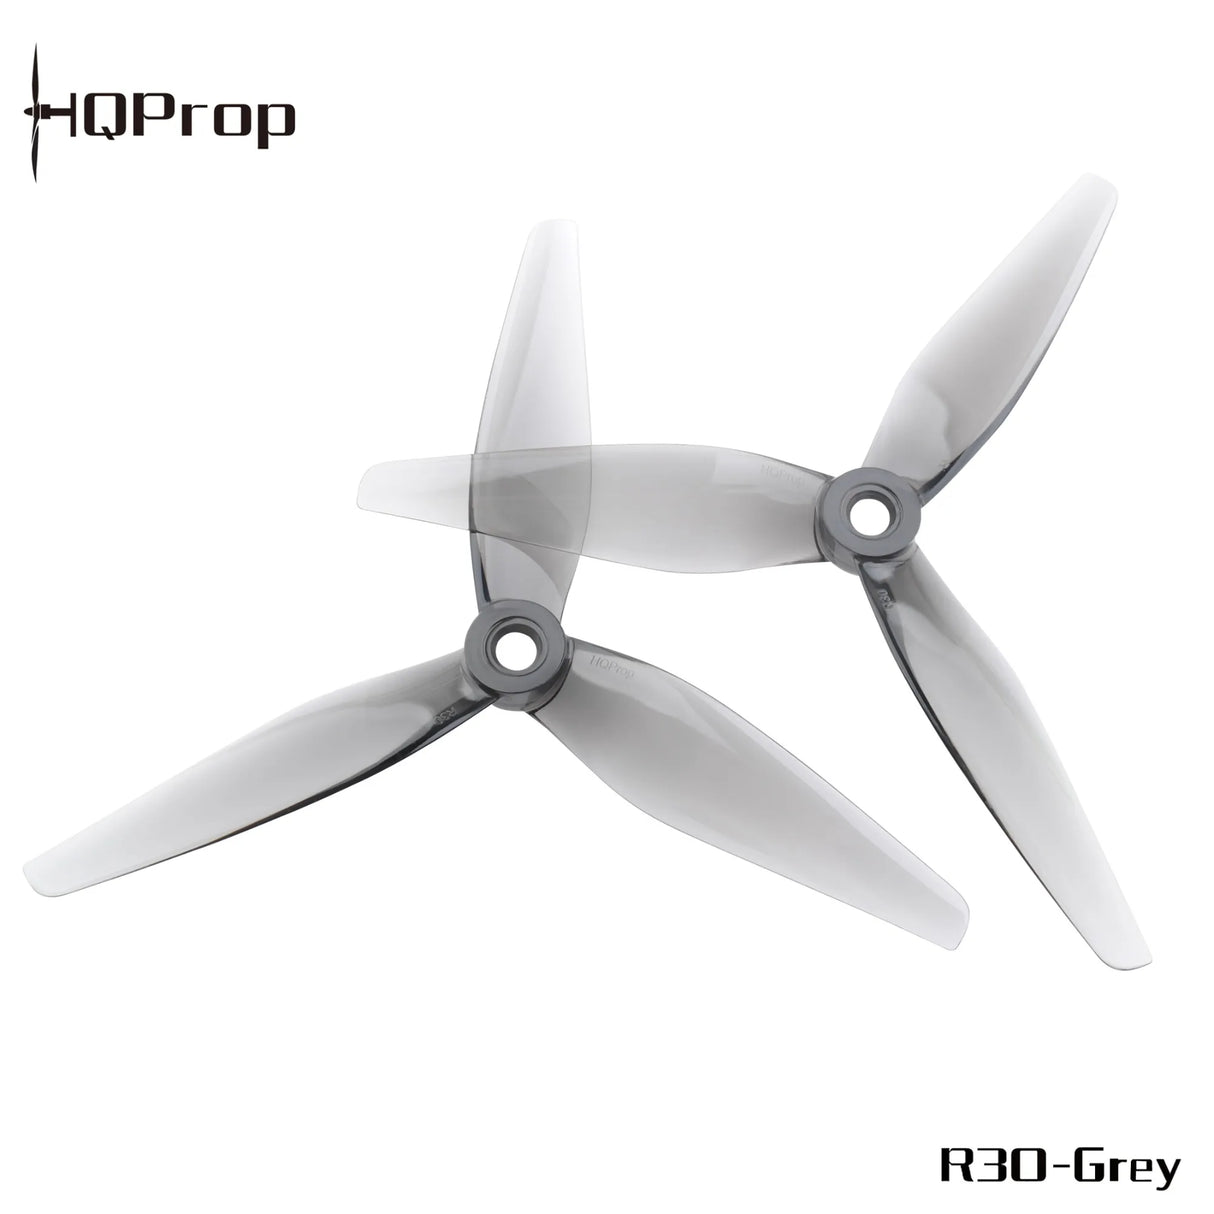 HQProp 5131 5.1" Propellers - DroneDynamics.ca